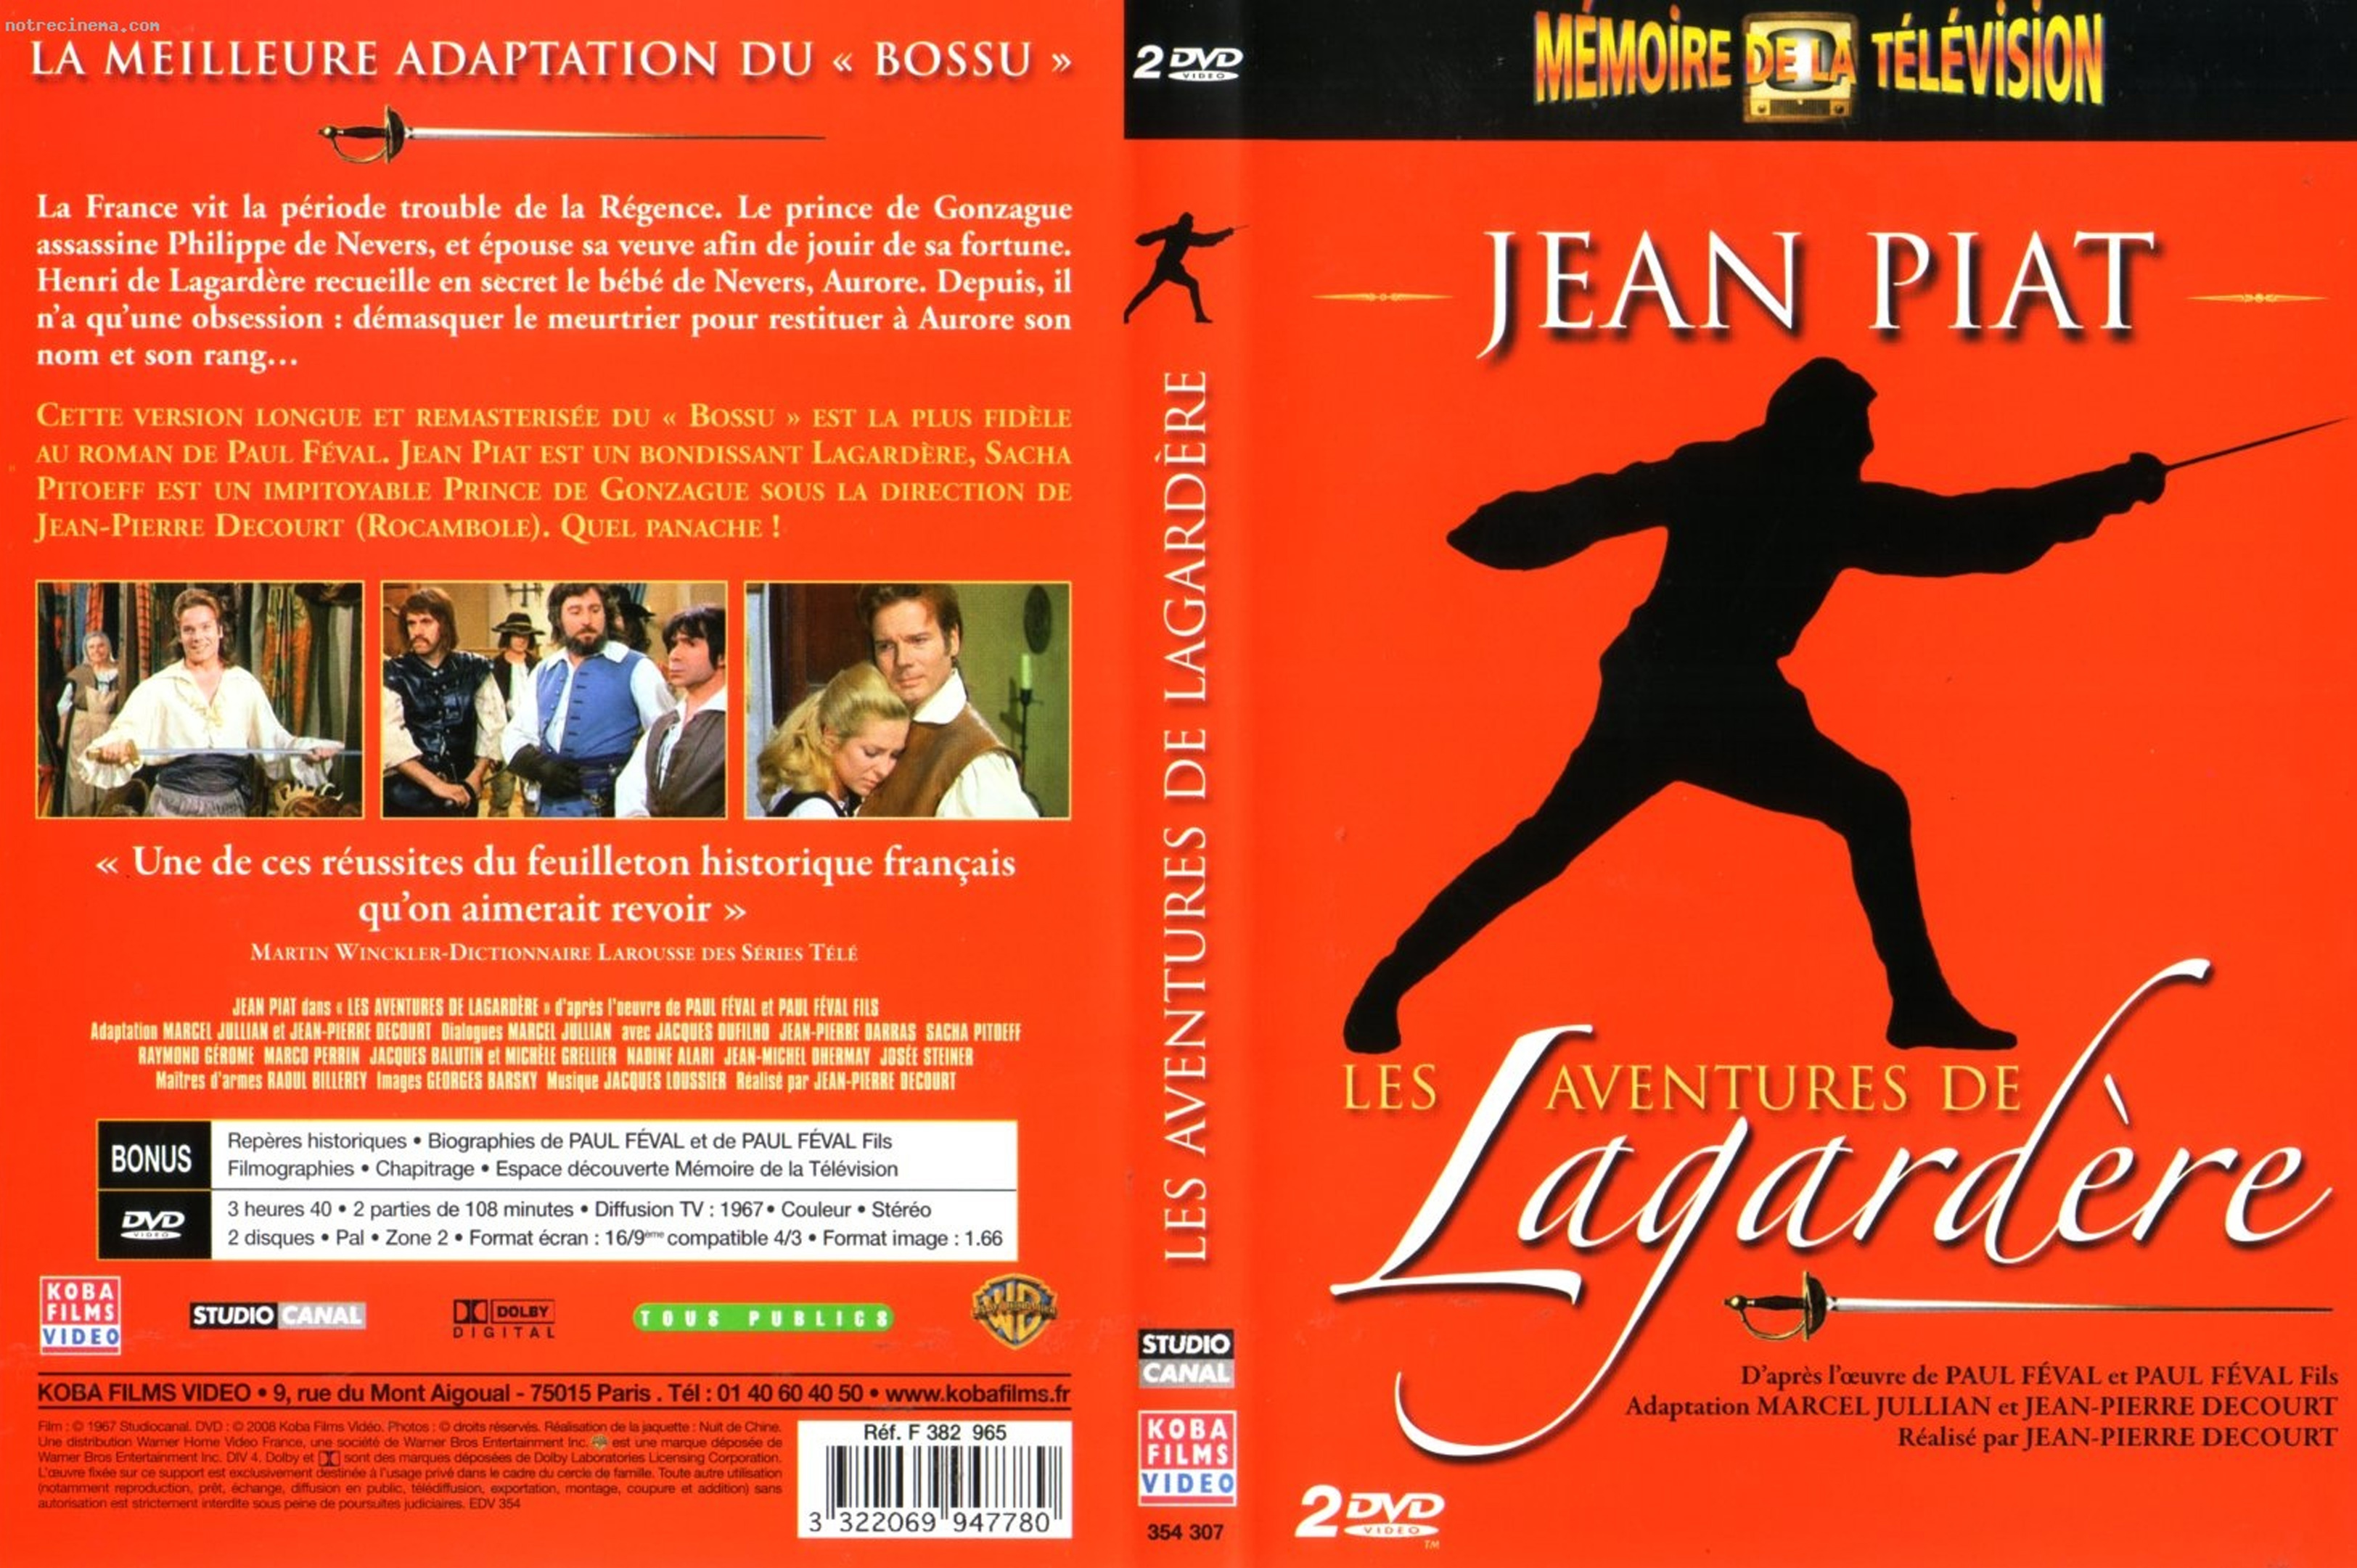 Jaquette DVD Les aventures de Lagardre